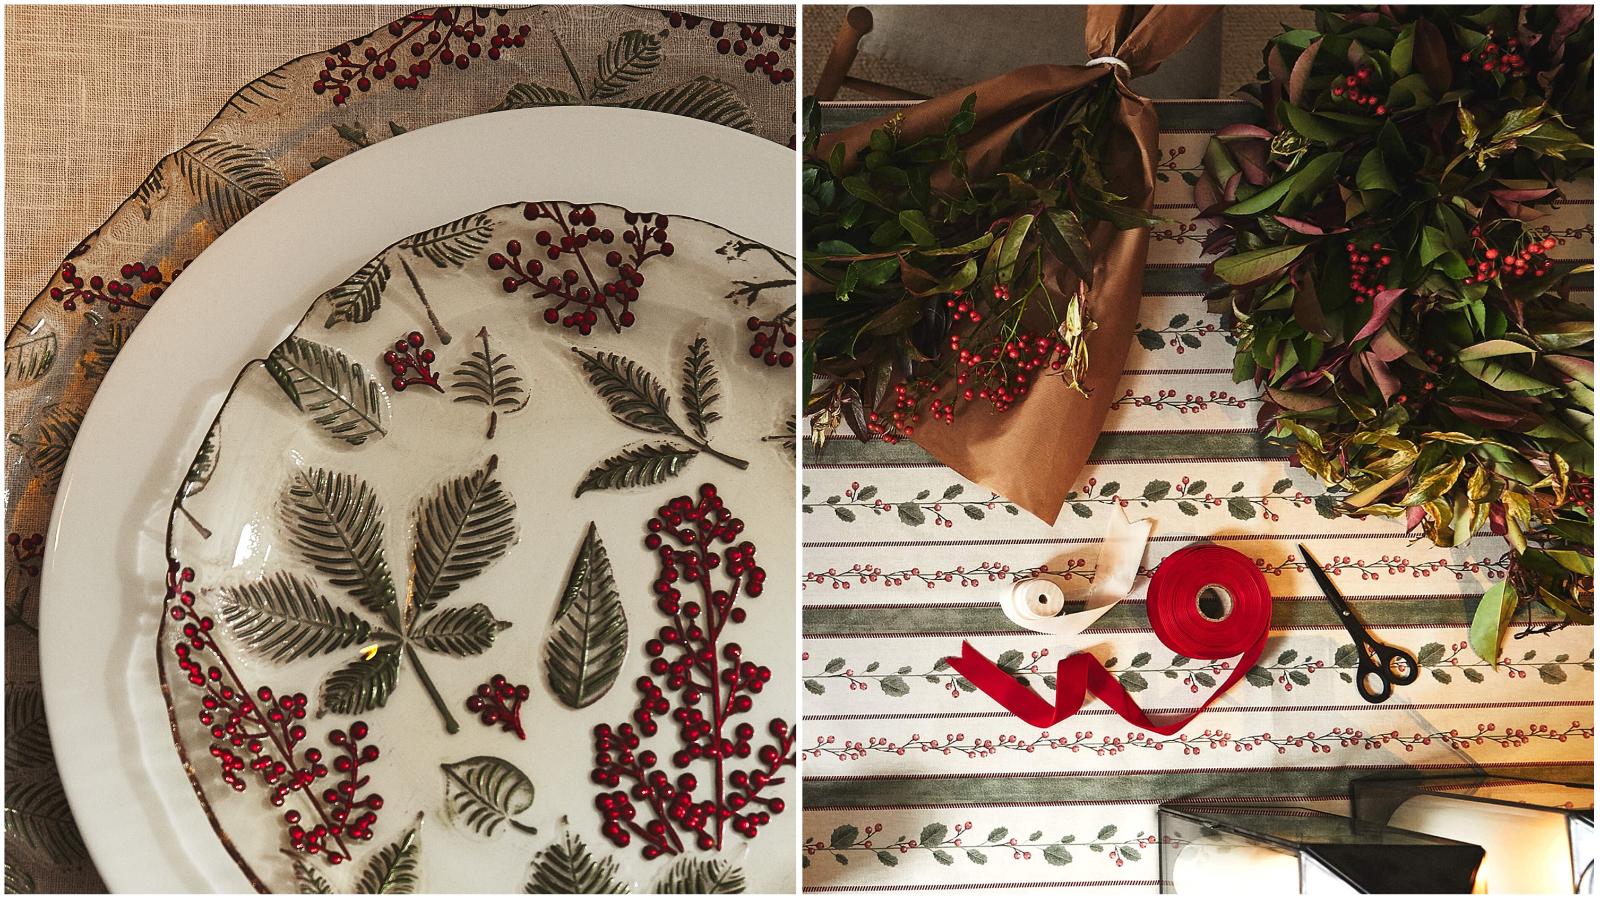 Zara Home ima divnu božićnu kolekciju idealnu za nadolazeće blagdansko razdoblje